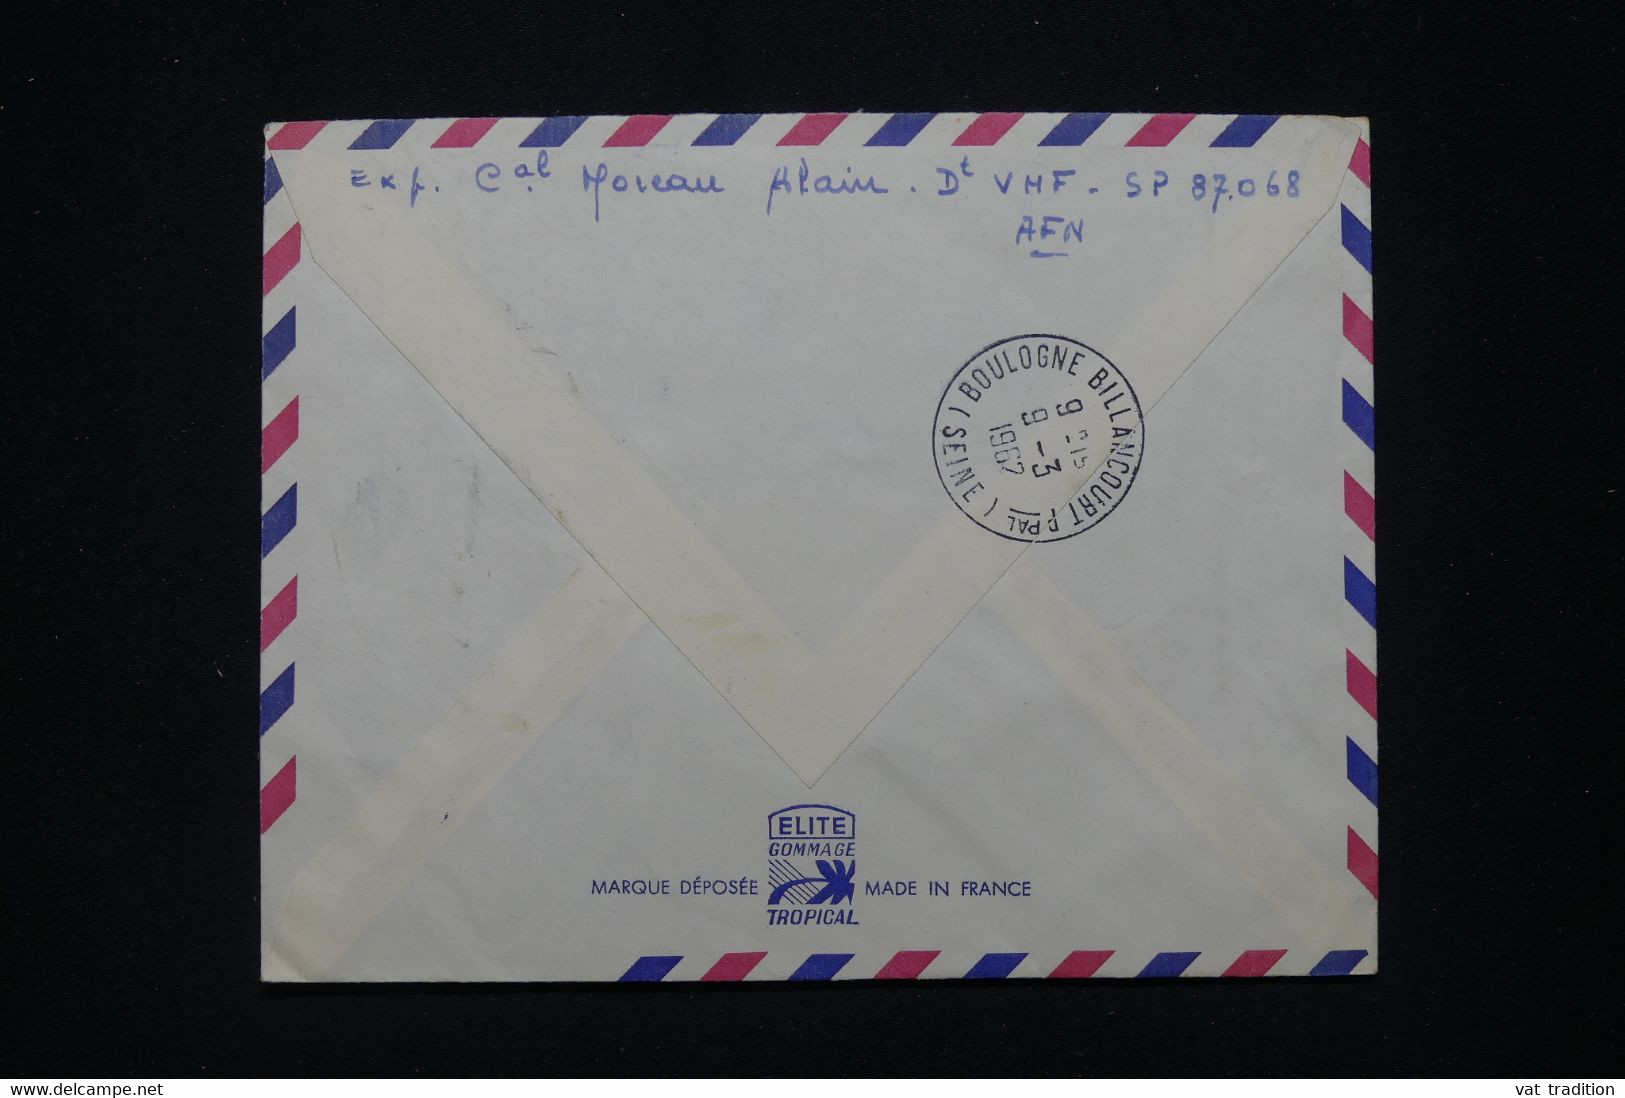 FRANCE / ALGÉRIE - Enveloppe En FM Et En Recommandé D'un Soldat Au SP 87.068 Pour La France En 1962  - L 96004 - Algerienkrieg